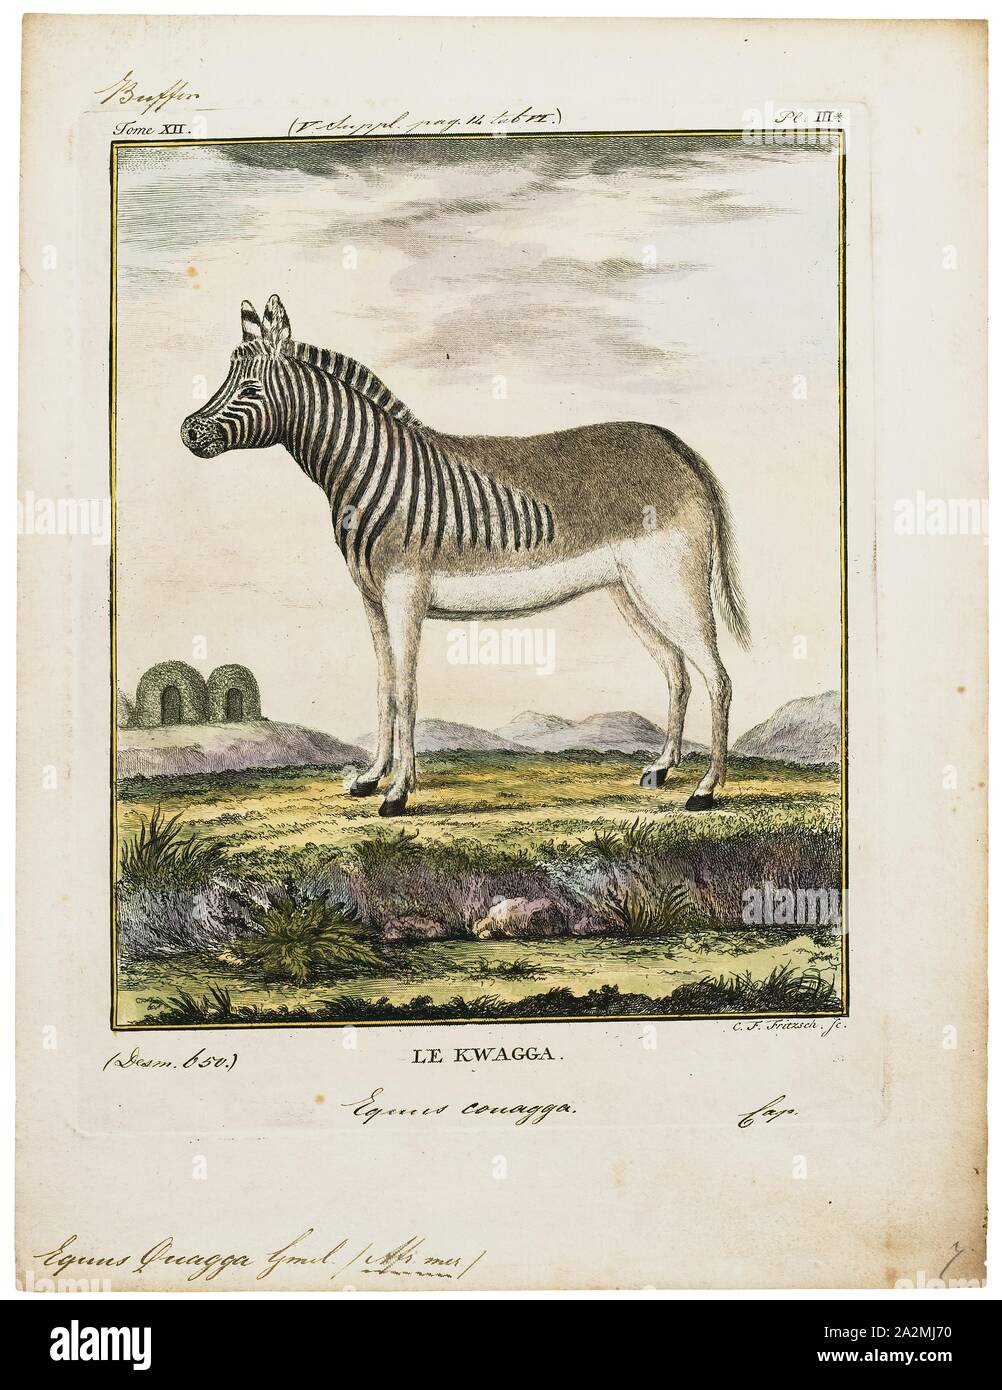 Equus quagga, stampa le pianure zebra (Equus quagga, precedentemente Equus burchellii), noto anche come il comune, zebra è il più comune e diffuso geograficamente specie di zebra. La sua gamma è frammentato, ma abbraccia gran parte dell Africa meridionale e orientale a sud del Sahara. Sei sottospecie sono state riconosciute tra cui l'estinto quagga che è stato pensato per essere una specie separate. Tuttavia, le ricerche più recenti supporta variazioni nelle popolazioni di zebra essendo clines piuttosto che di sottospecie., 1700-1880 Foto Stock